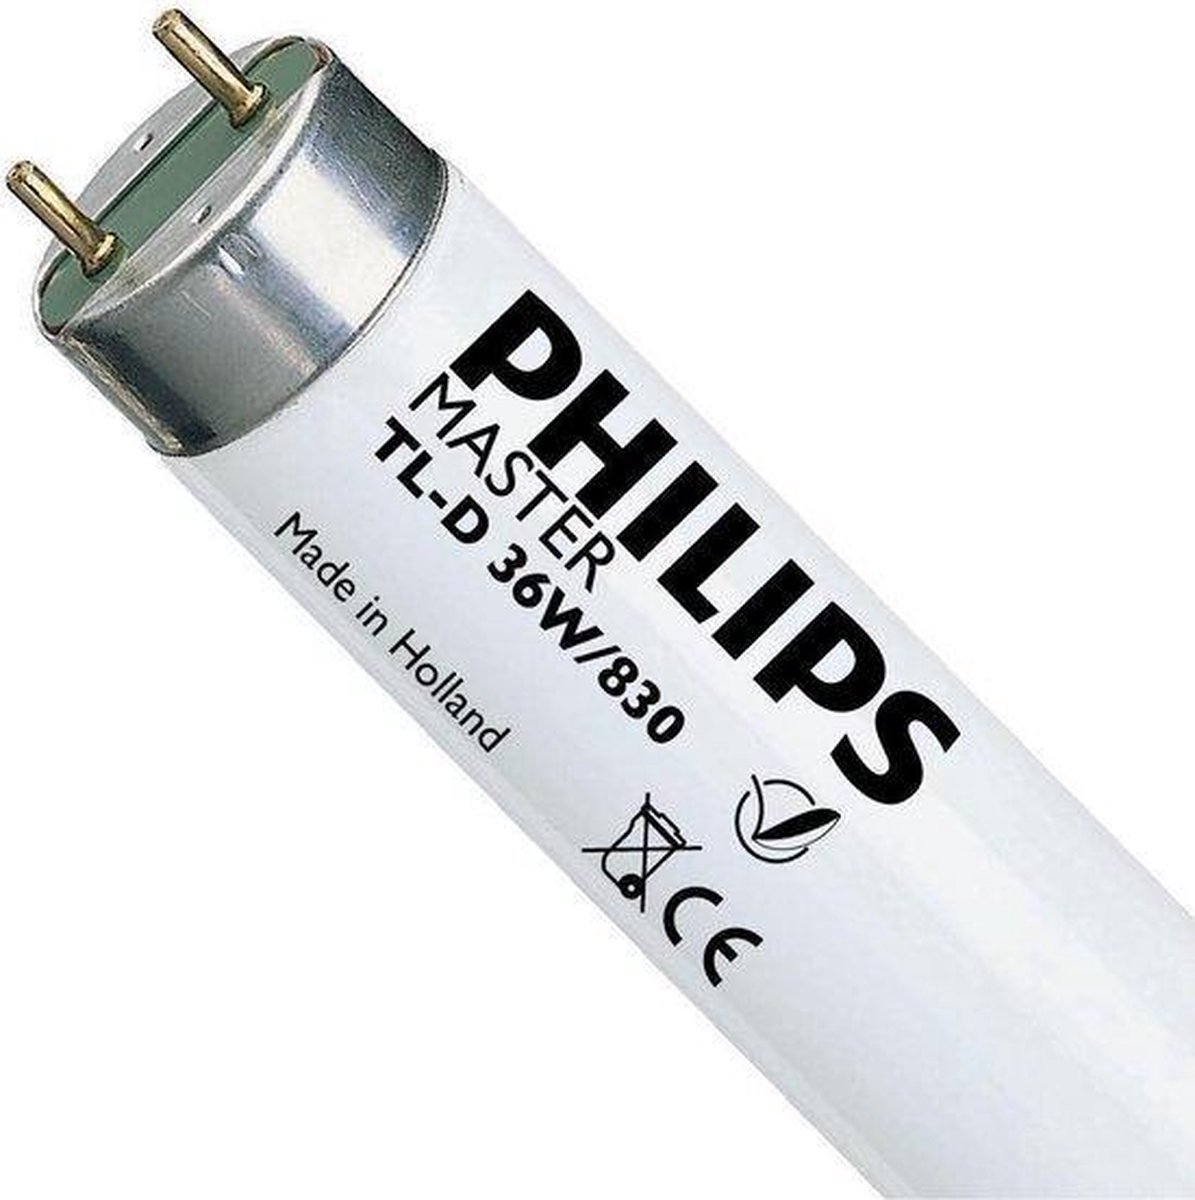 Philips TL-D 36W 830 Super 80 (MASTER) | 120cm - Warm Wit 25 stuks | bol.com